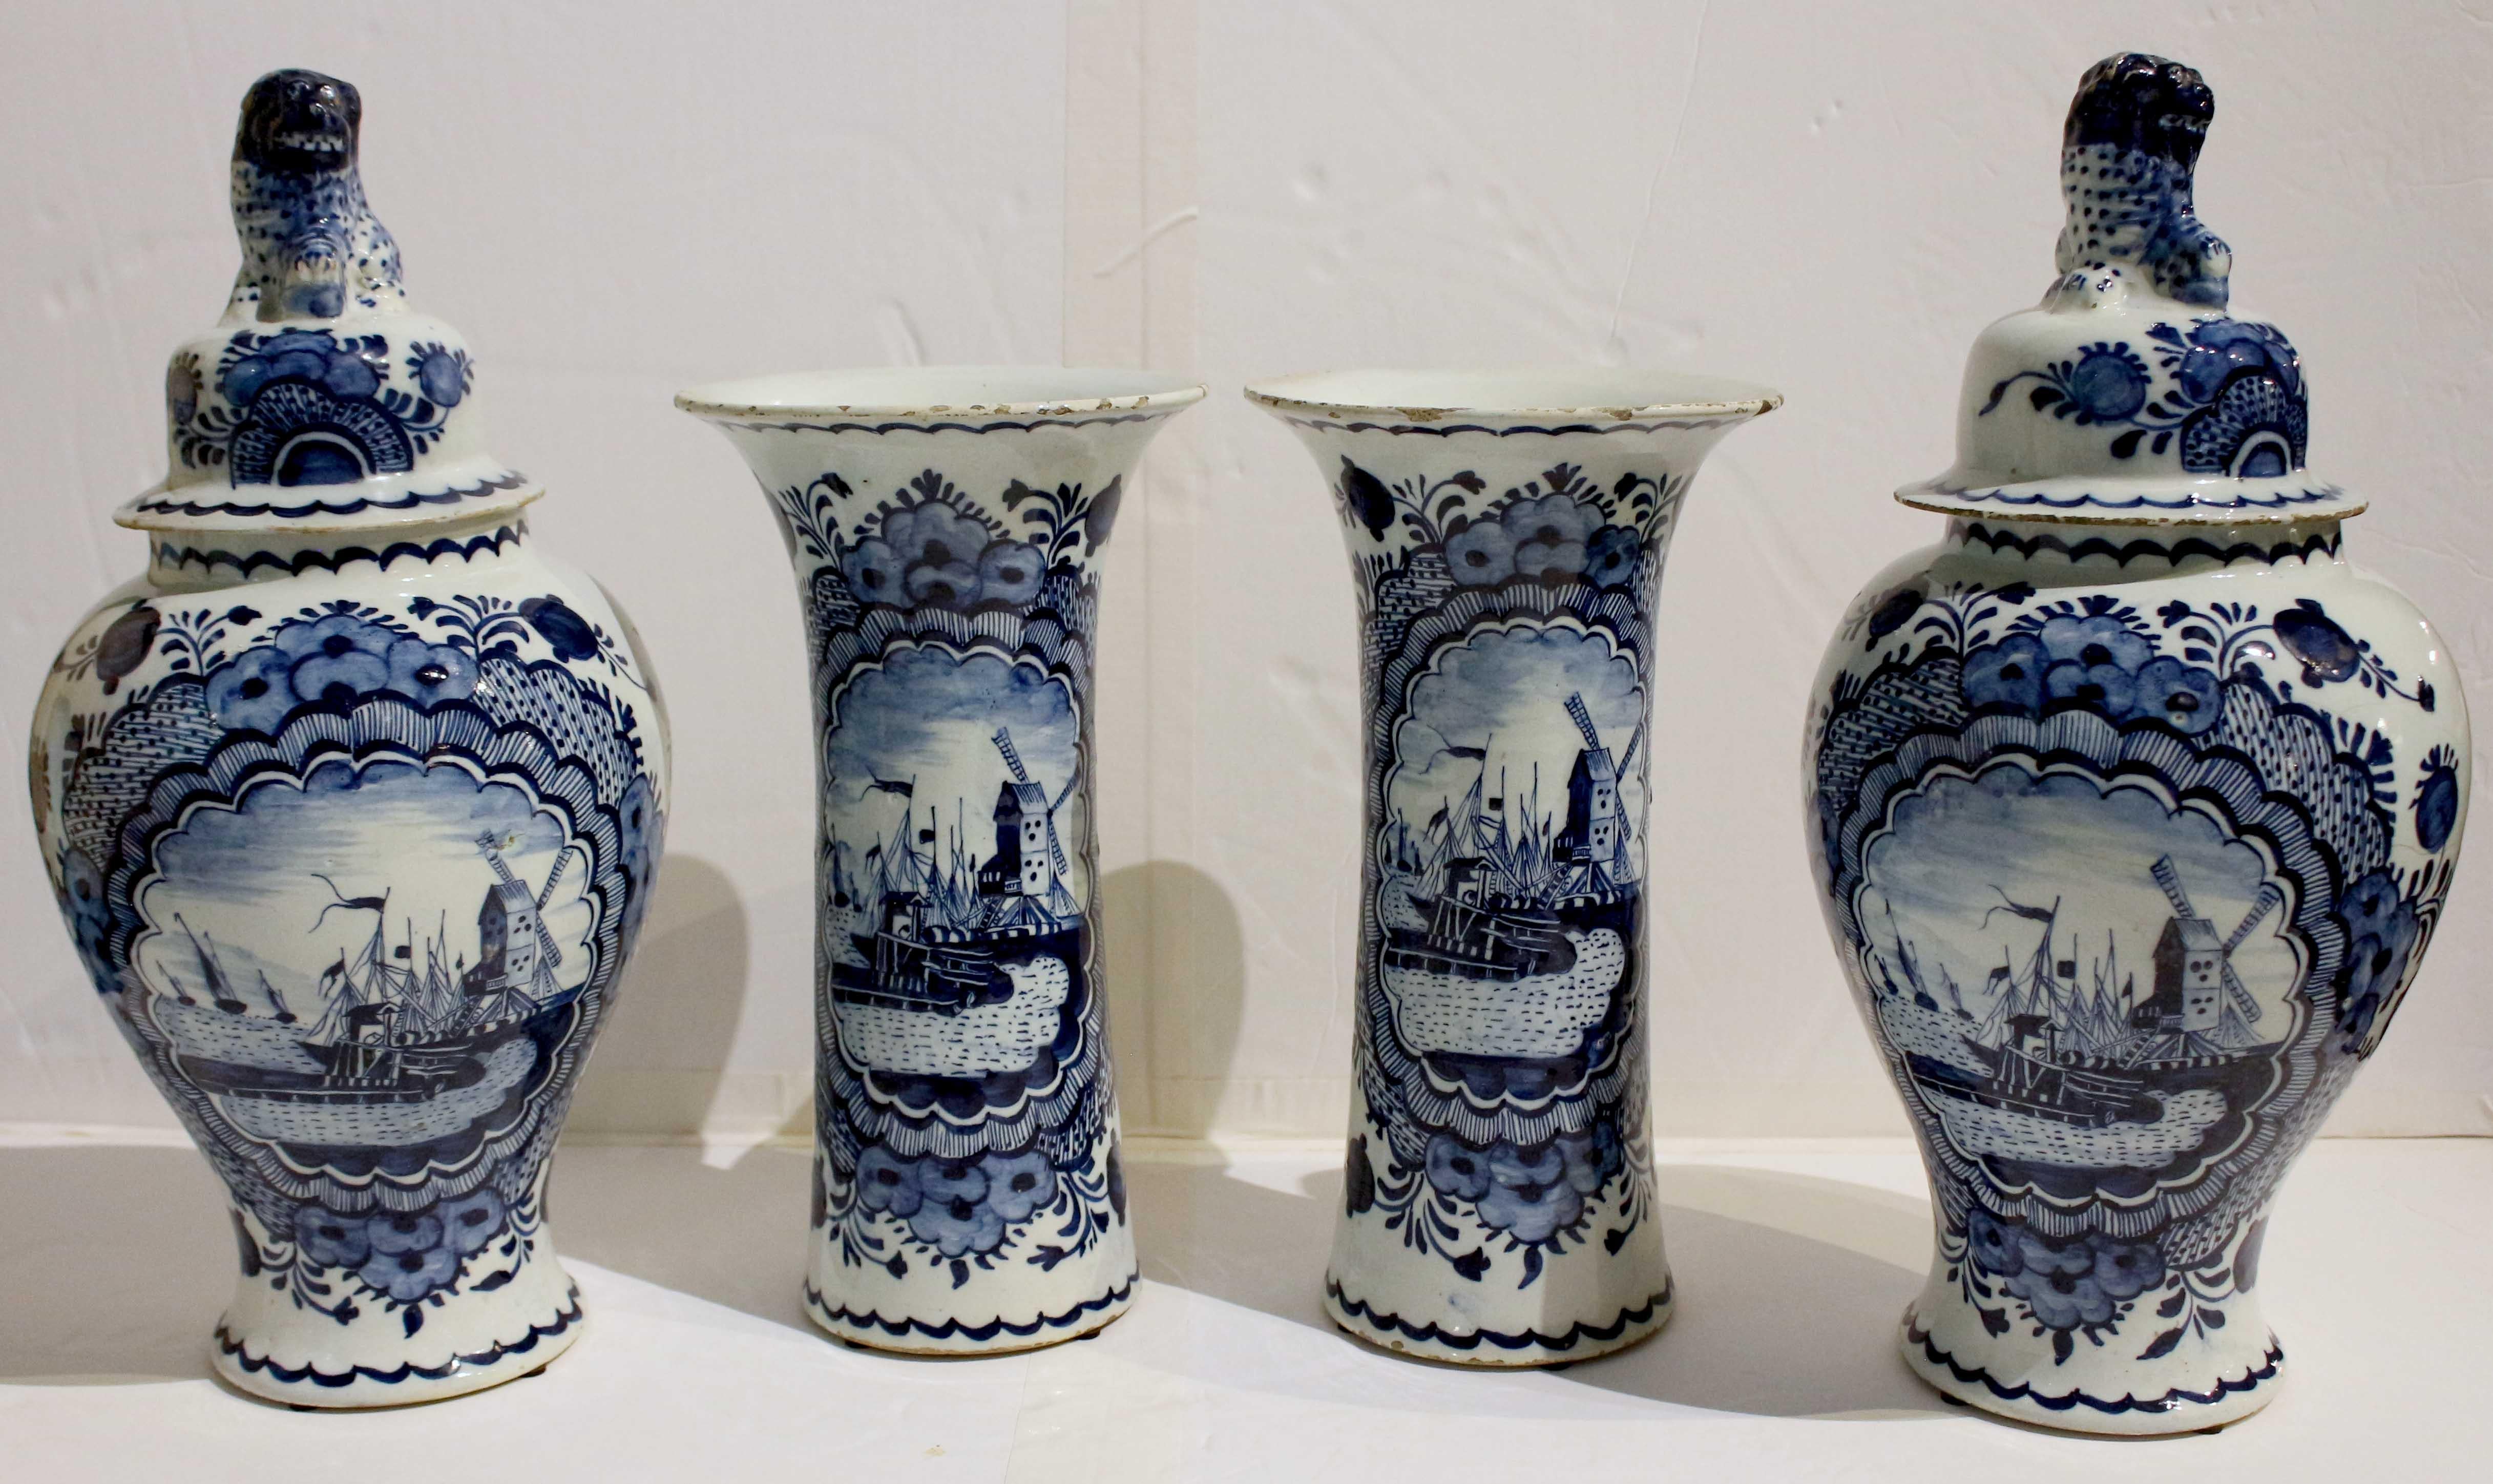 CIRCA 1800 Delft 4-tlg. blau-weißes Garniturset. Bestehend aus 2 abgedeckten Gläsern und 2 Bechervasen. Jeweils mit zentraler Medaillon-Szene einer Windmühle und Schiffen, die in den Hafen einlaufen, mit Umkehrung zu Blumenranken. Die Gläser mit